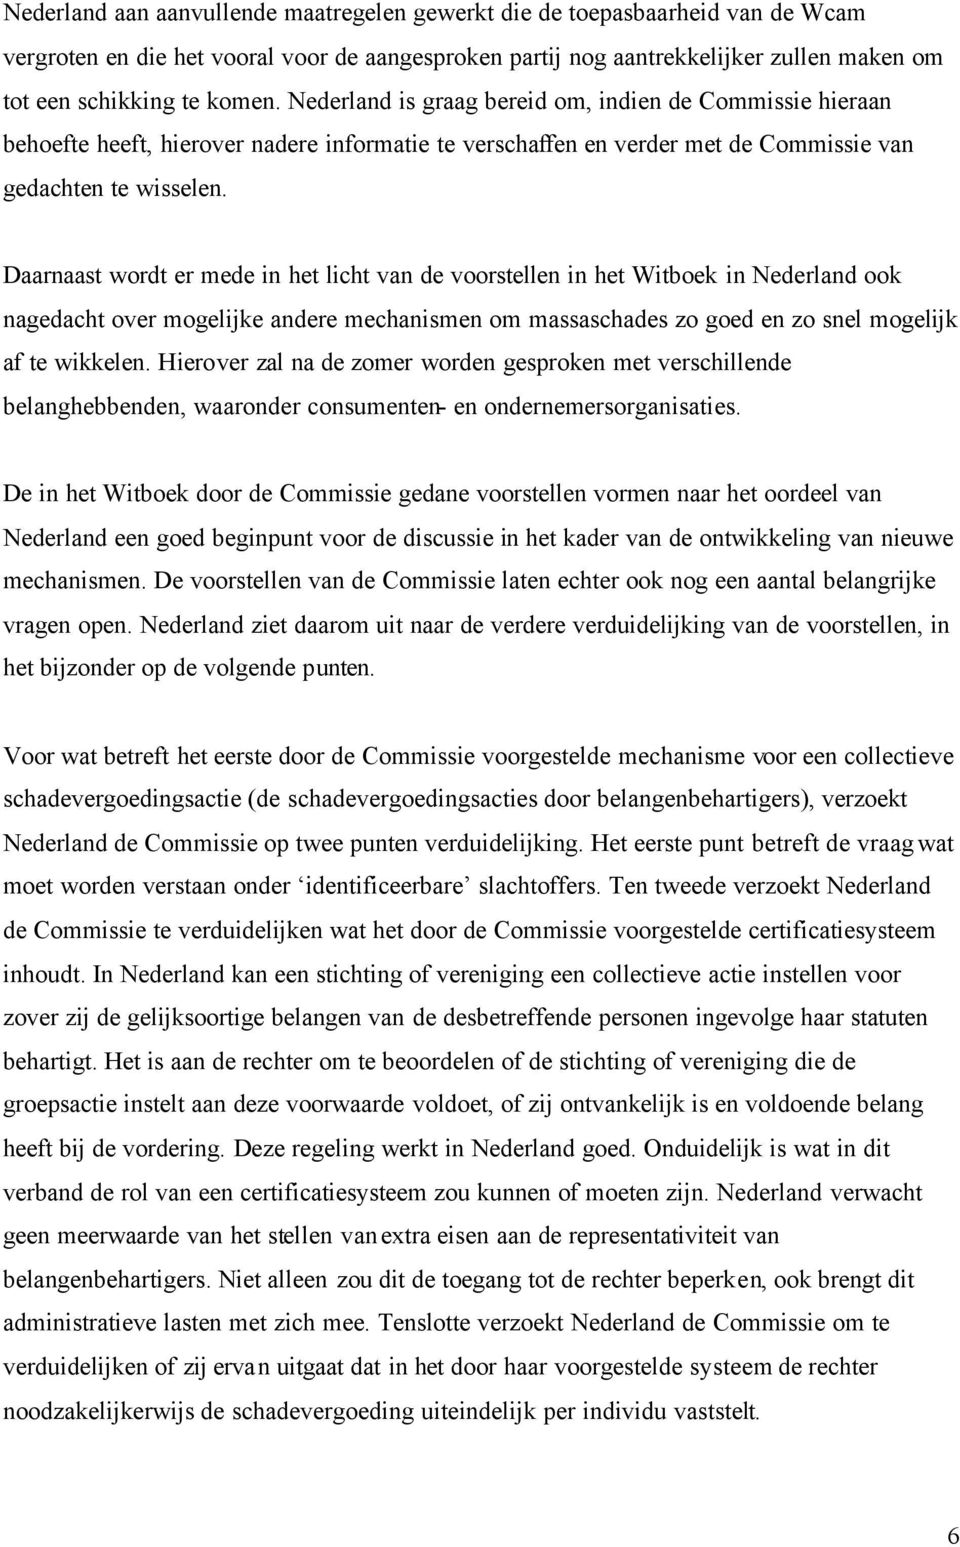 Daarnaast wordt er mede in het licht van de voorstellen in het Witboek in Nederland ook nagedacht over mogelijke andere mechanismen om massaschades zo goed en zo snel mogelijk af te wikkelen.